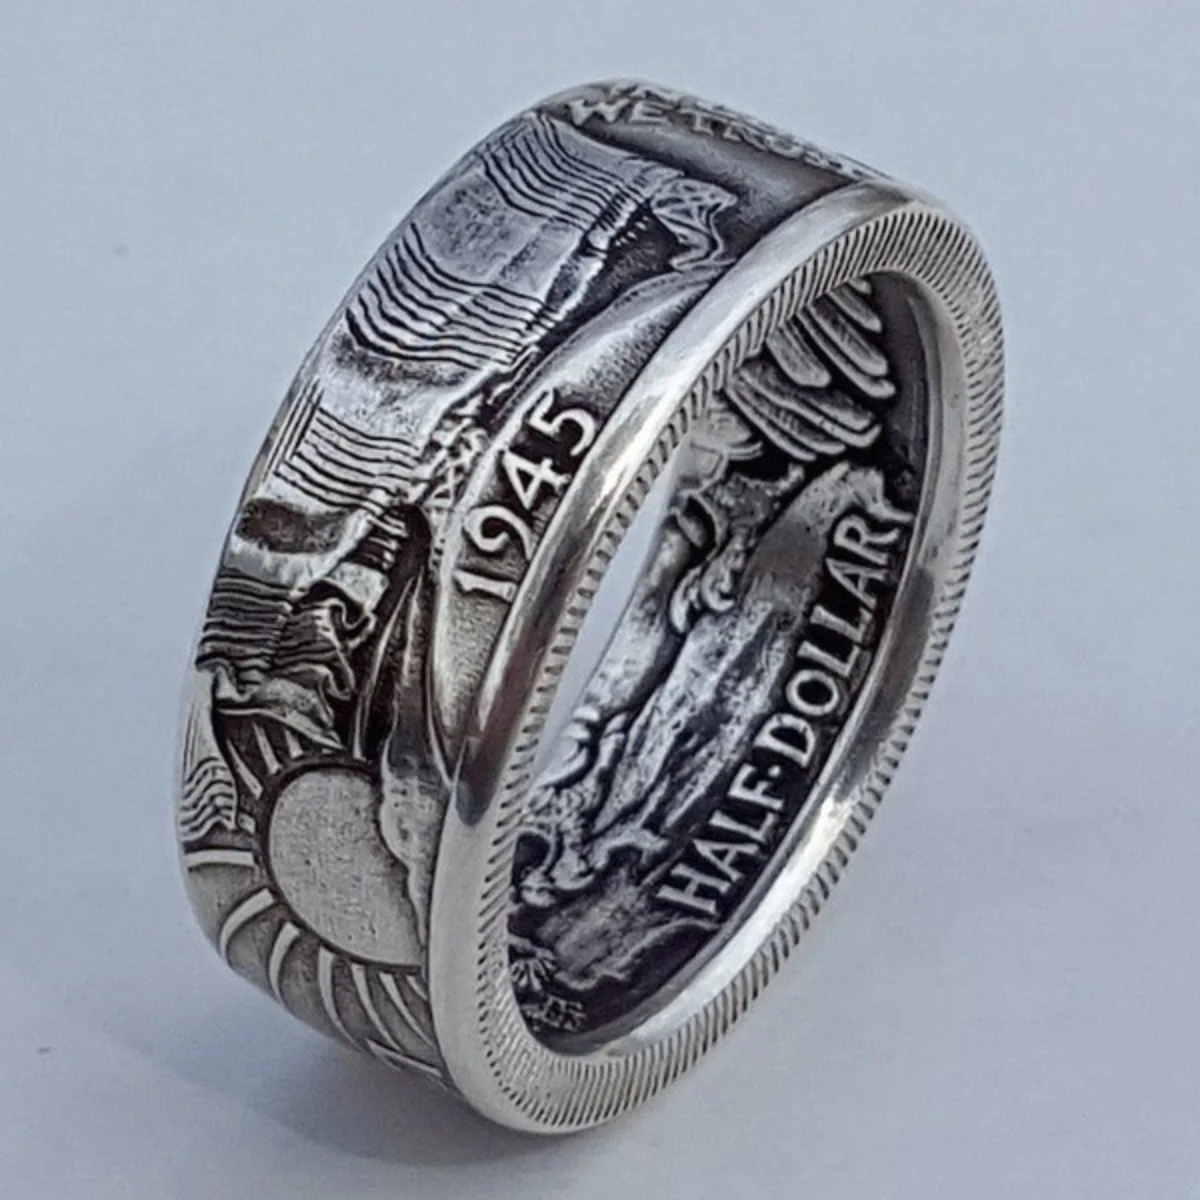 

Популярное женское кольцо с вырезанными буквами в стиле ретро Моргана 1945, готическое кольцо с бесплатной доставкой за 1 доллар, оптовая прод...